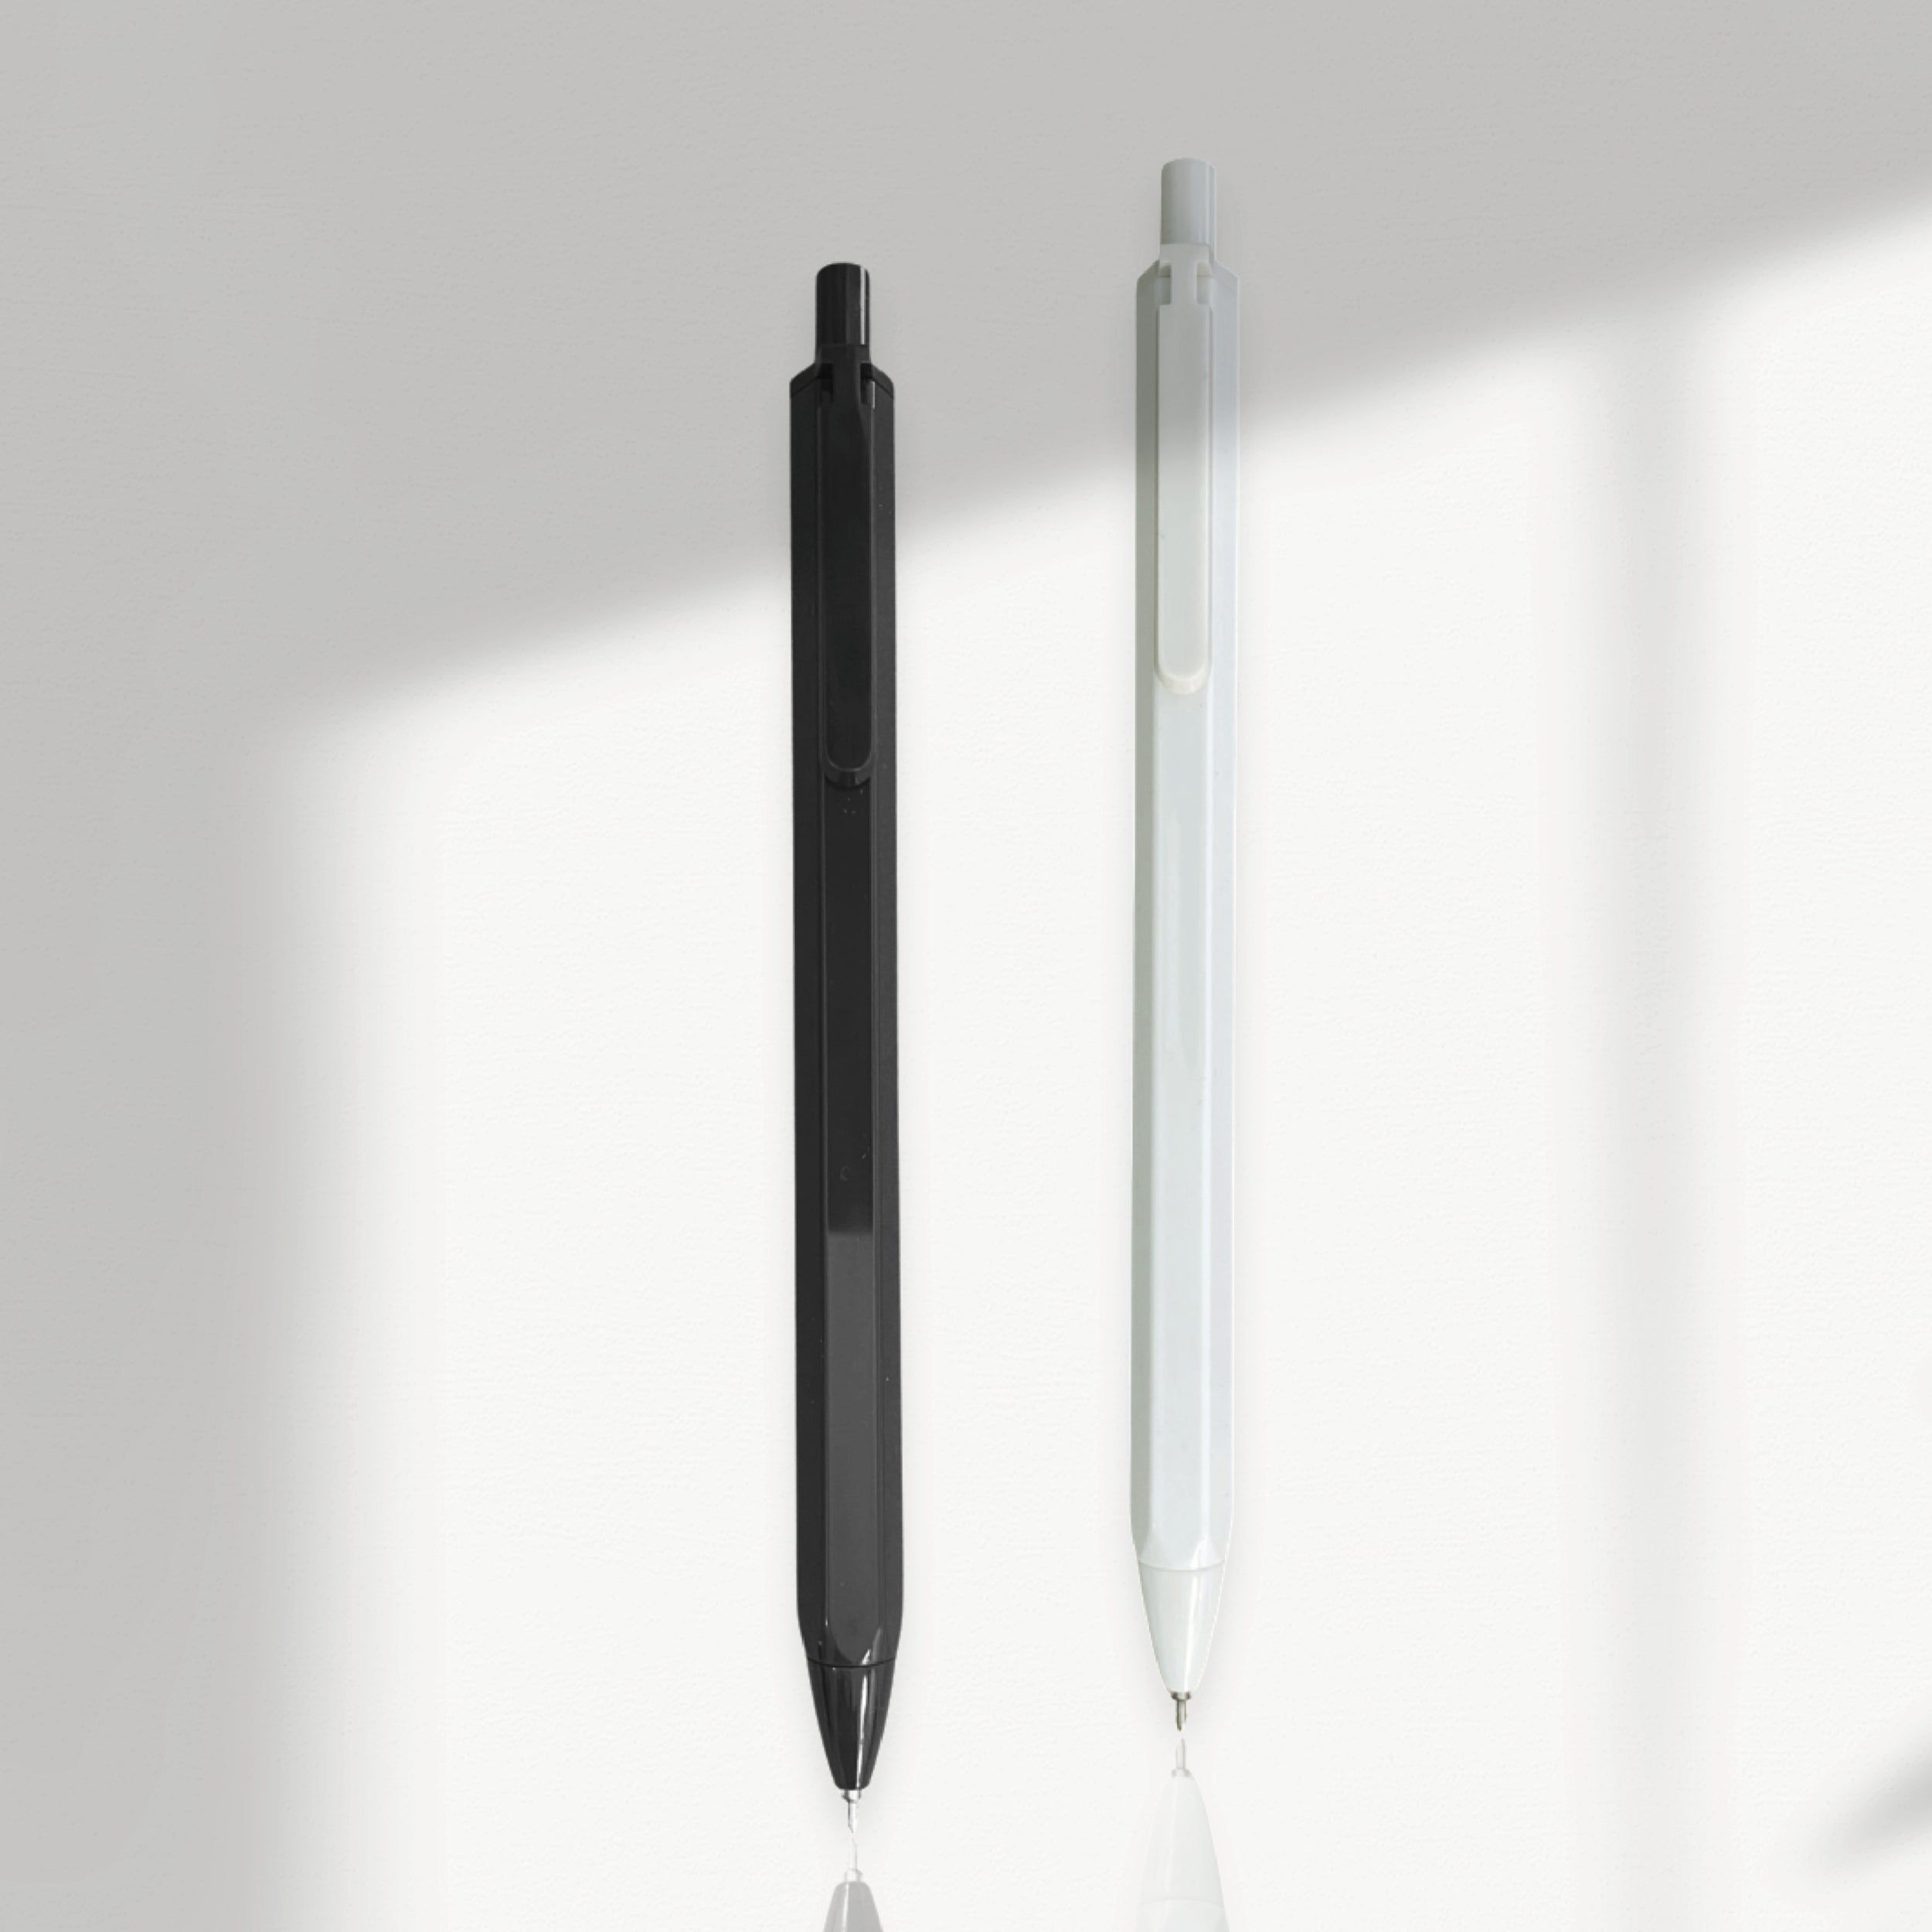 Simple fineline pen | 0.35